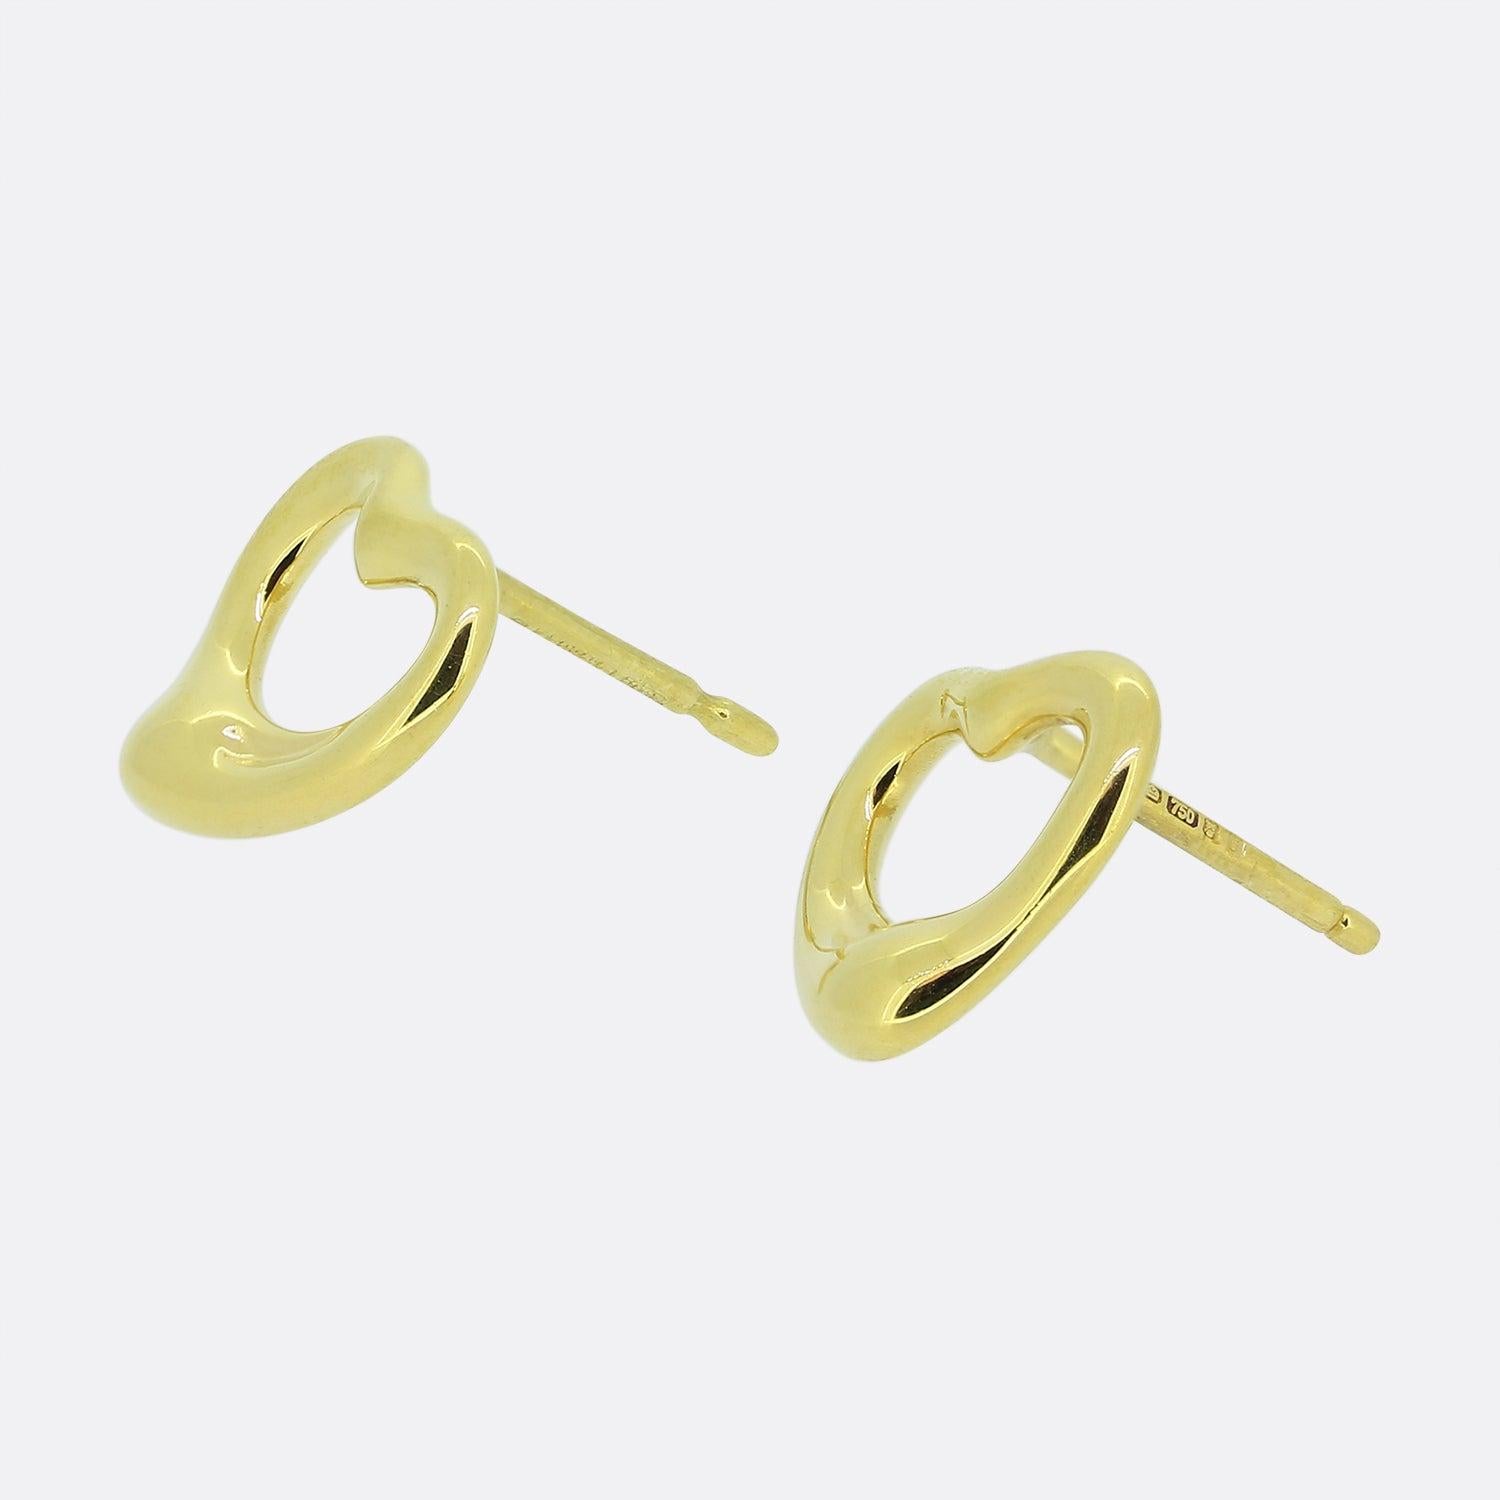 Hier haben wir ein Paar Ohrringe aus 18-karätigem Gelbgold von dem weltbekannten Schmuckdesigner Tiffany & Co. Diese Ohrringe sind Teil einer Kollektion von Elsa Peretti und zeigen ihr ikonisches offenes Herzdesign.
Es handelt sich um das etwas